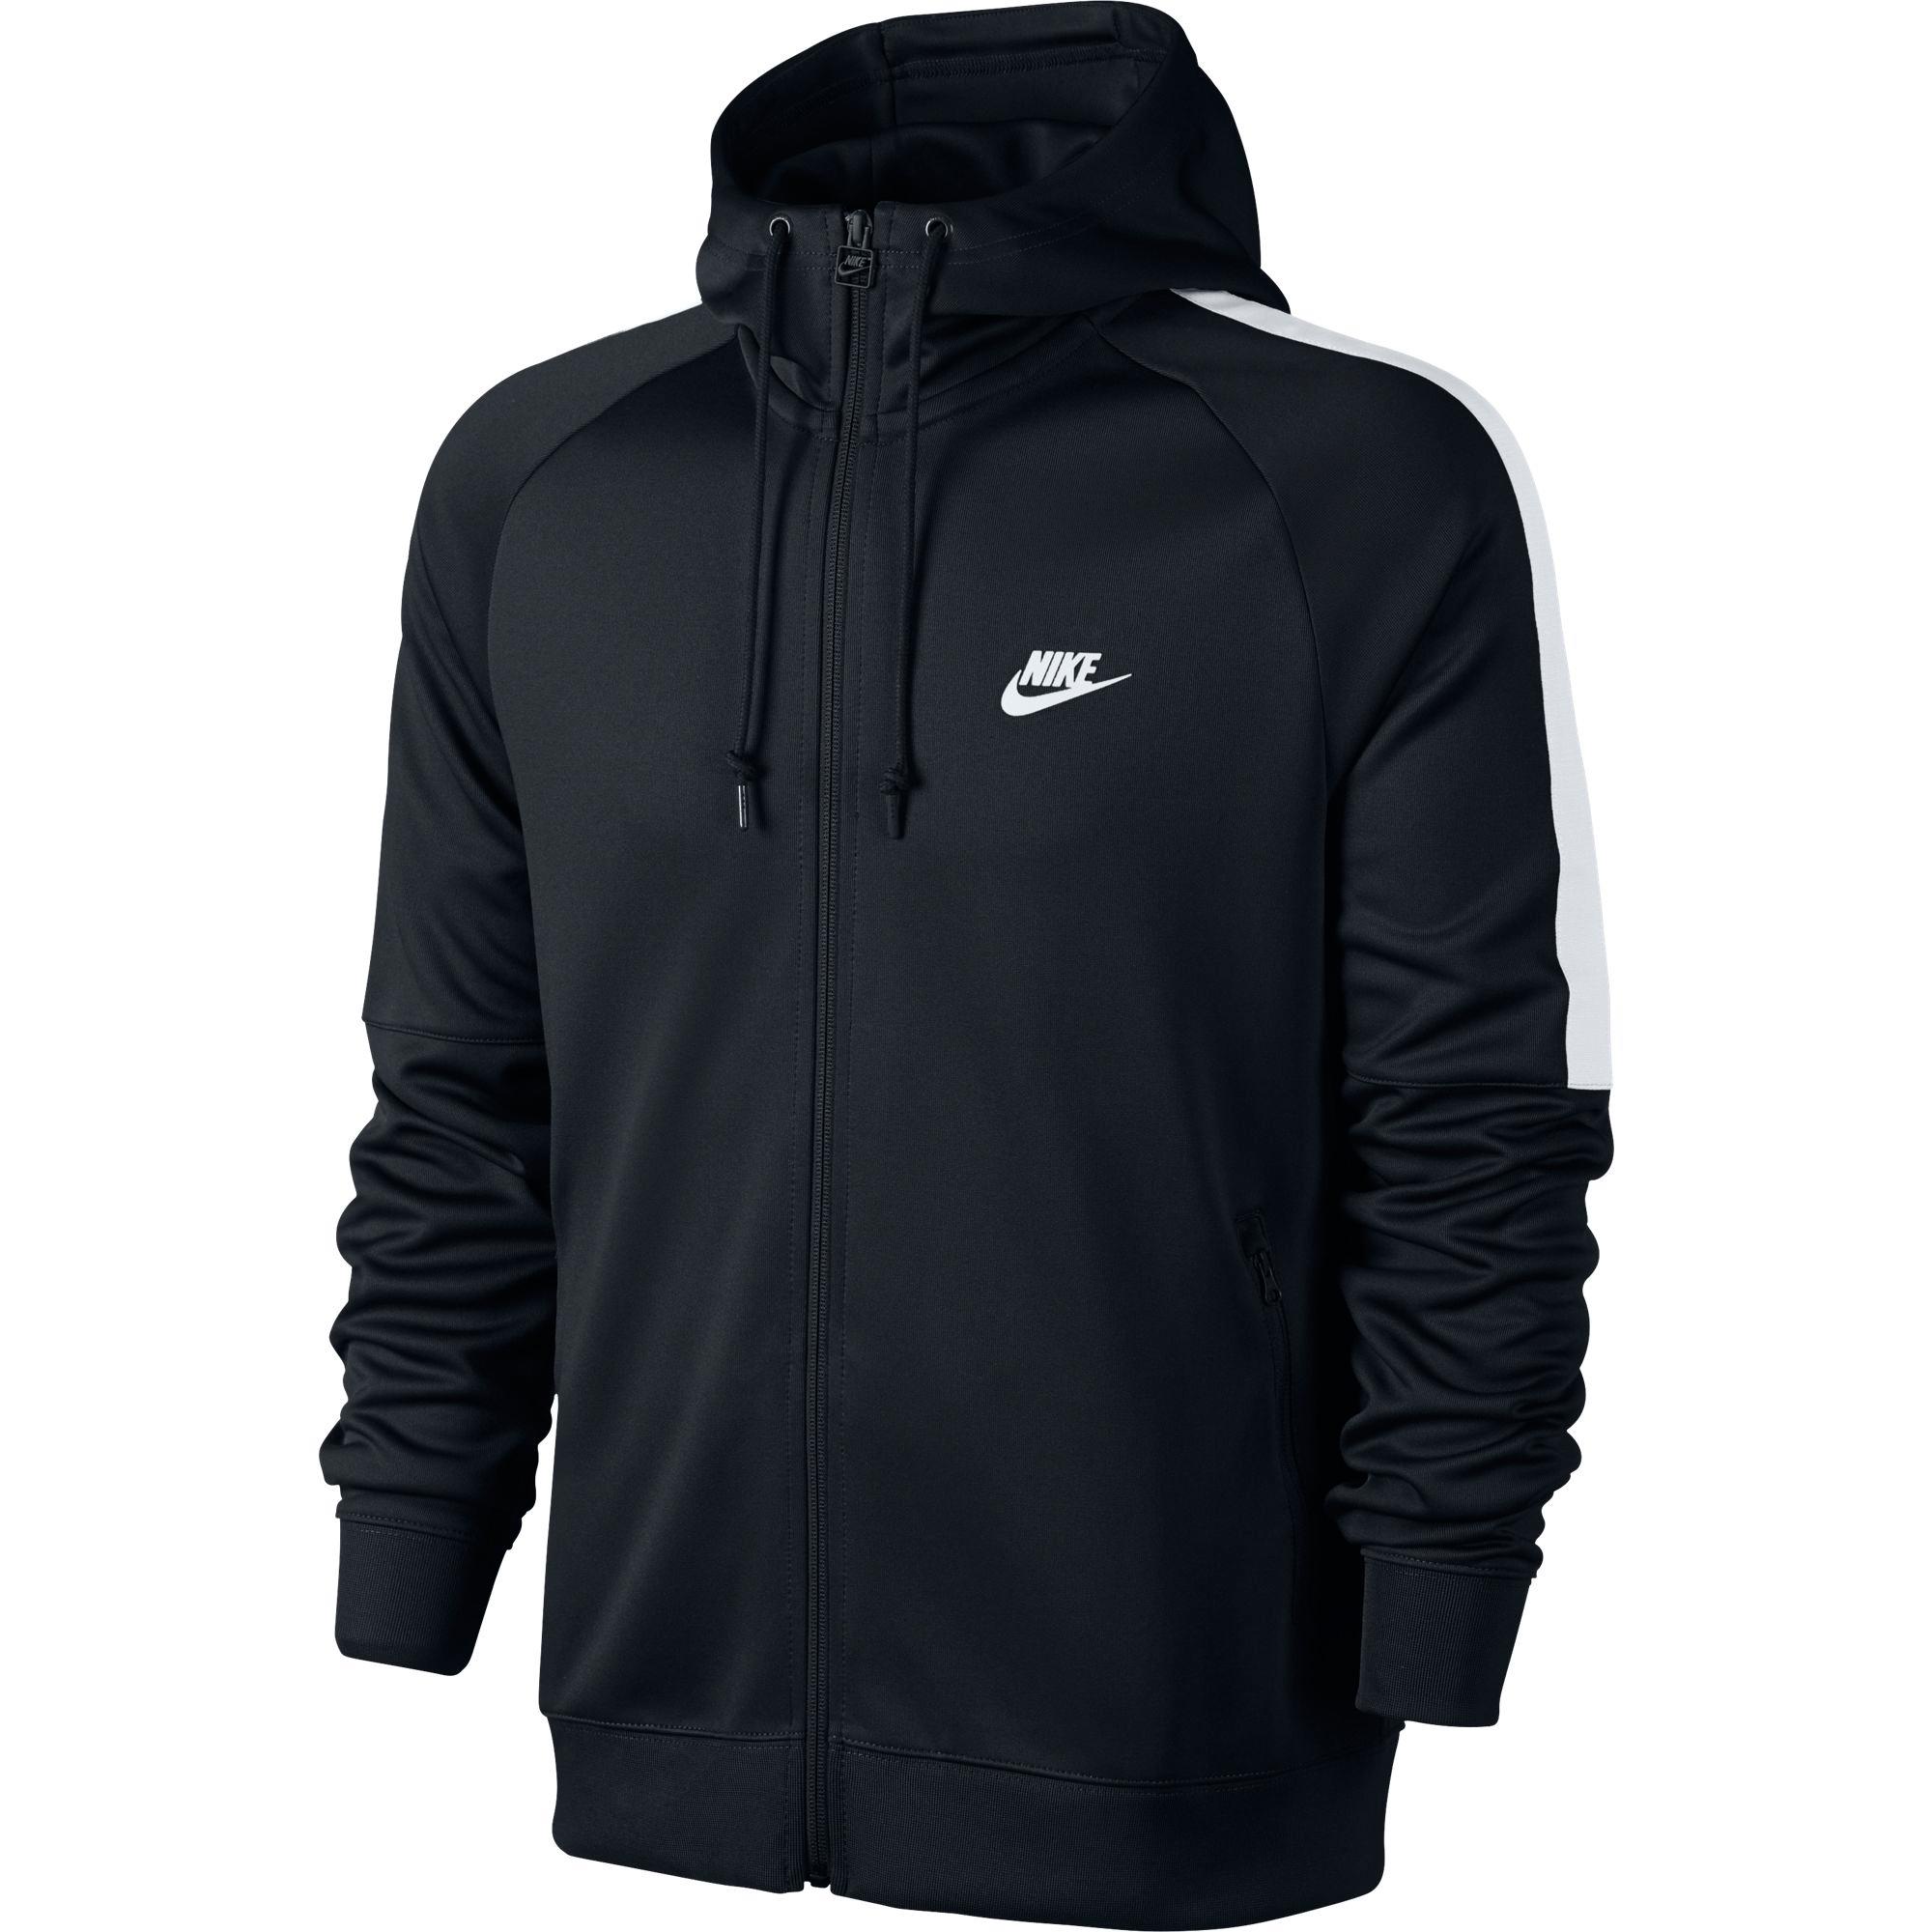 Nike Mens Sportswear Jacket - Black - Tennisnuts.com